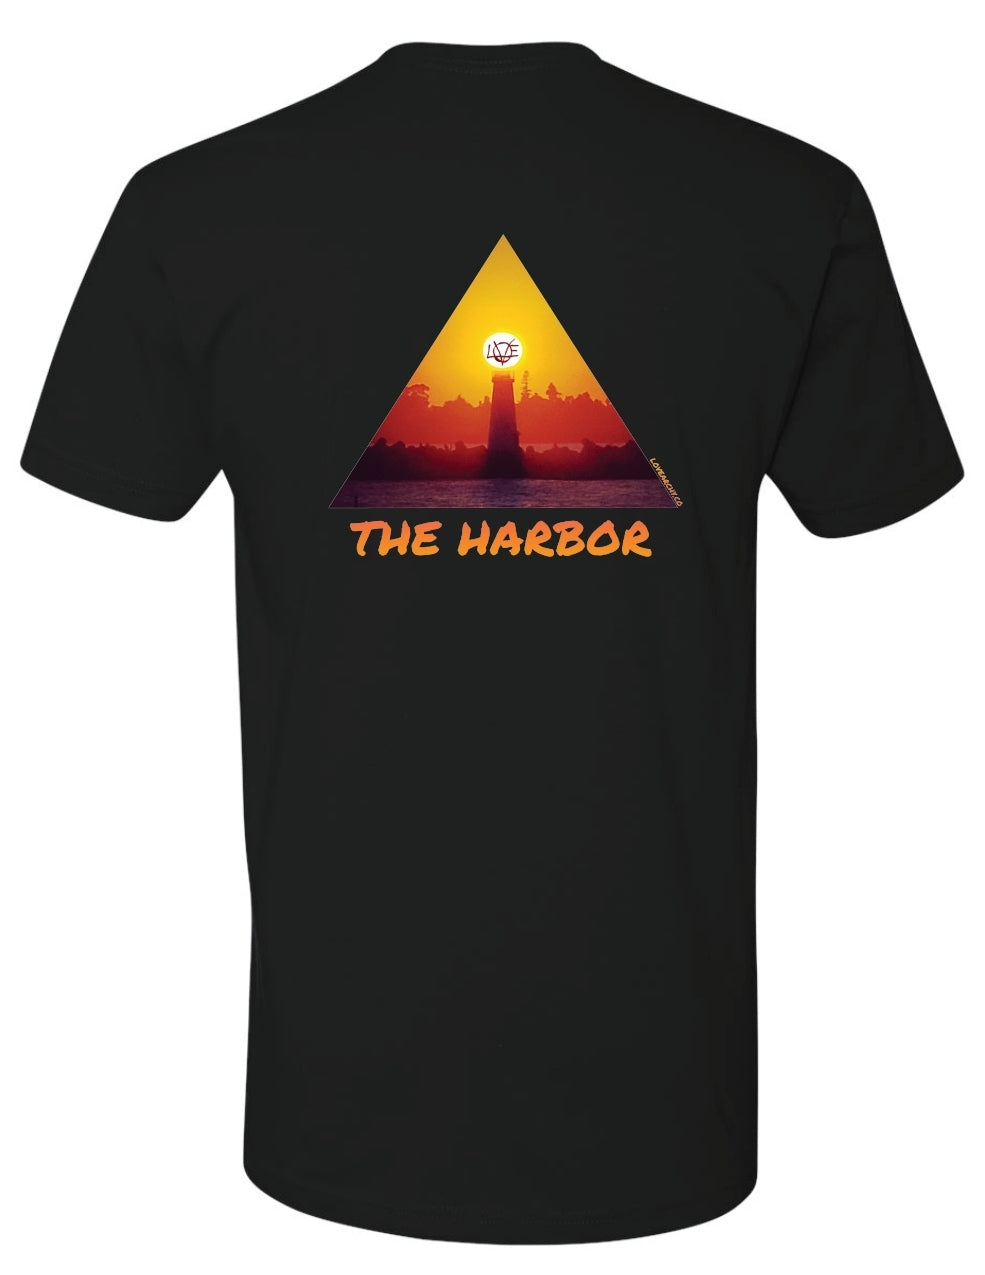 The Harbor, T-Shirt Black